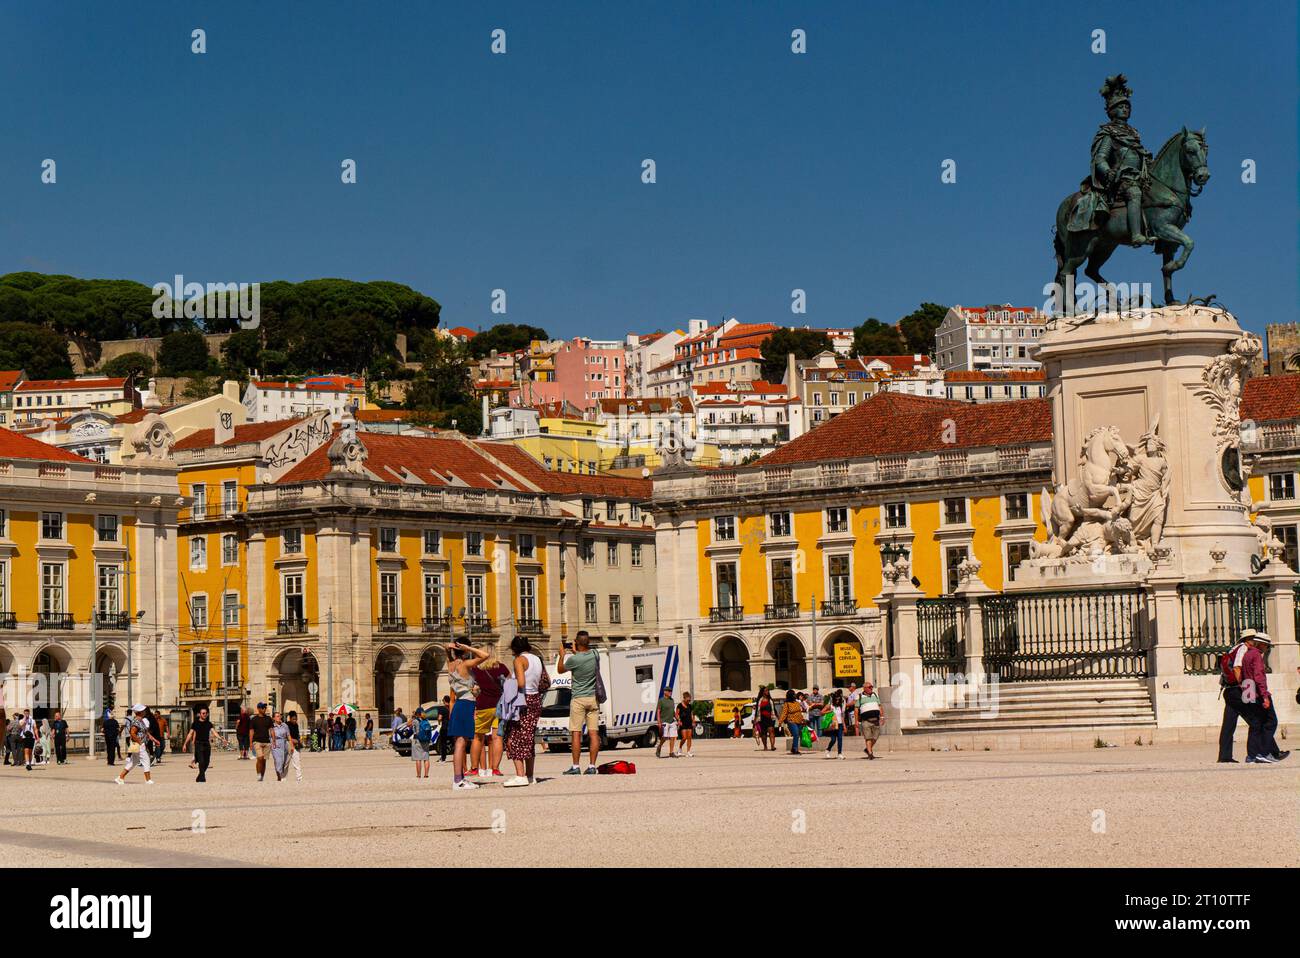 Praka do Comércio è una grande piazza che si affaccia sul fiume Tago, nella capitale del Portogallo, Lisbona, una delle più grandi piazze del Portogallo, con la statua del re Foto Stock